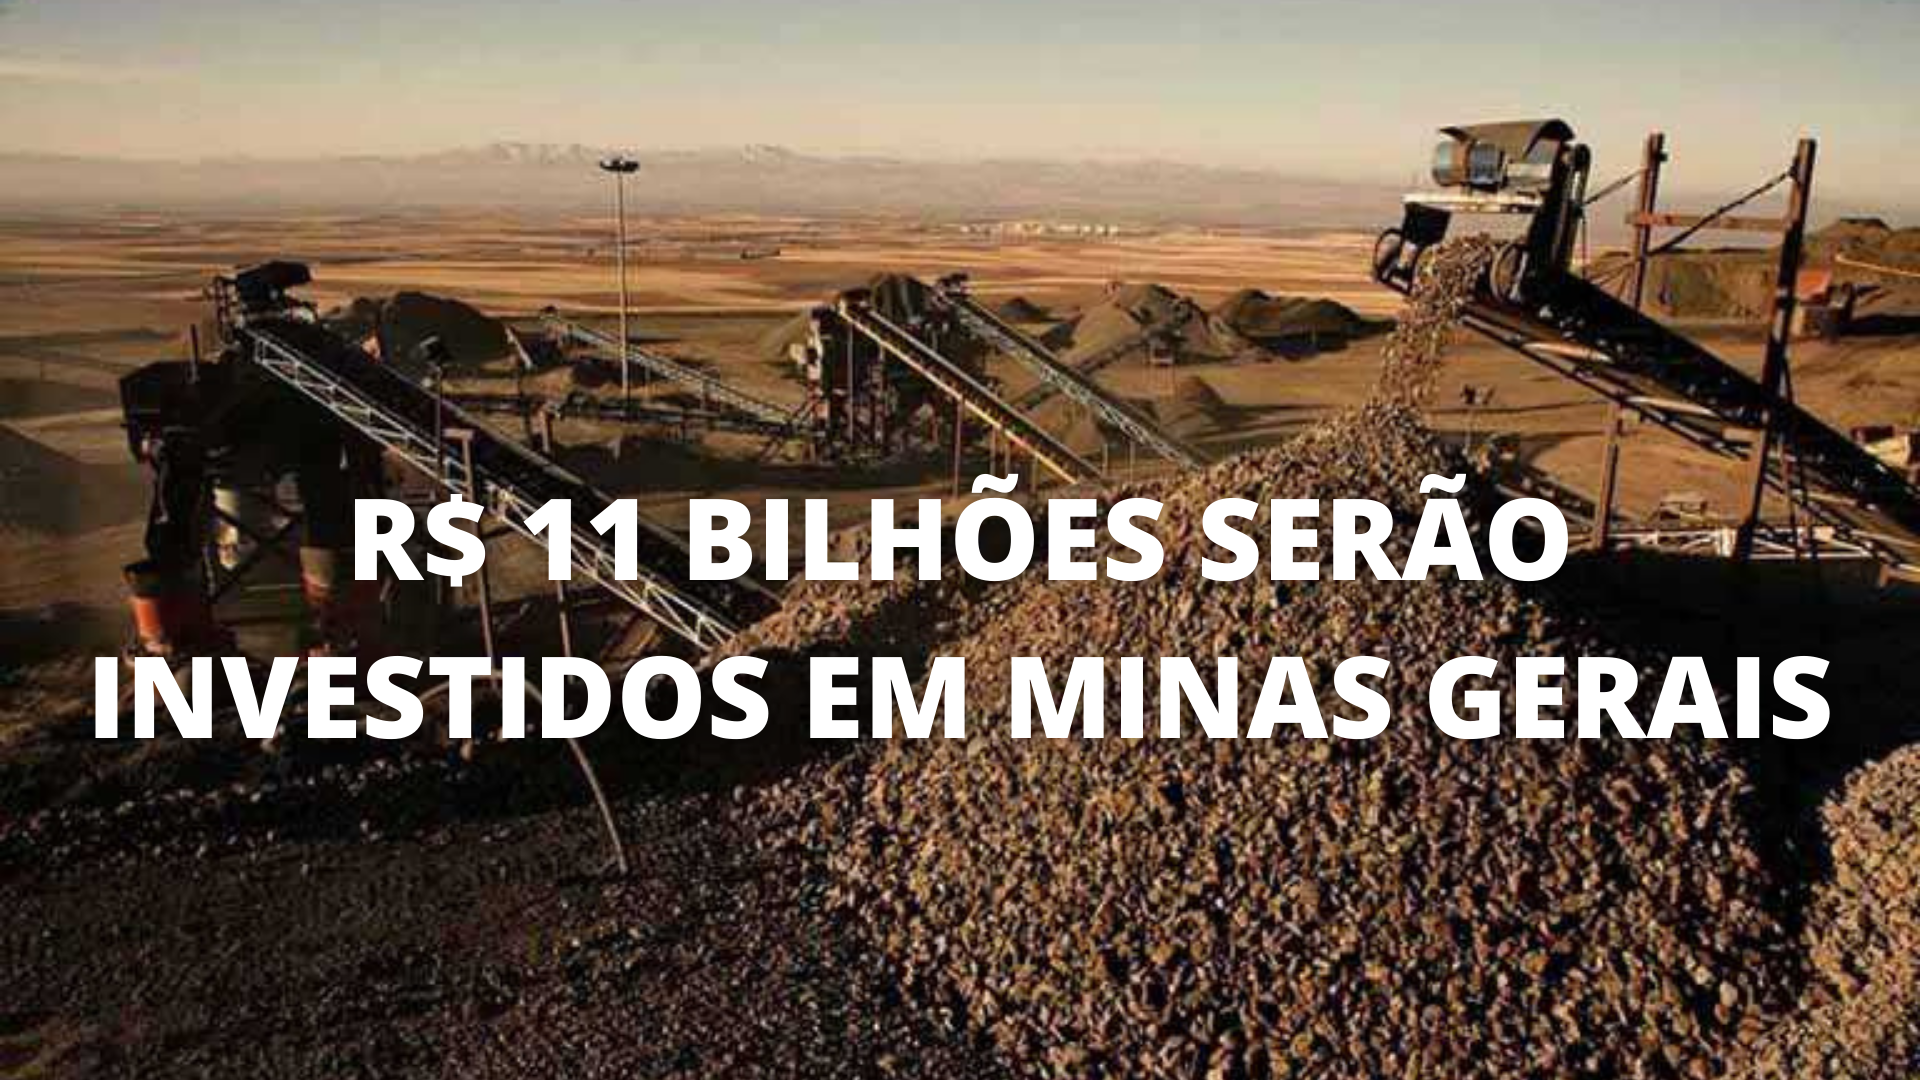 Mineradora implantará megaprojeto de exploração de minério de ferro em Minas Gerais. Aportes podem chegar a 11 bilhões de reais e 6,2 mil empregos podem ser gerados A mineradora Sul Americana de Metais (SAM) planeja implantar o megaprojeto de minério de ferro no norte de Minas Gerais Mineradora – Minas Gerais – minério de ferro – empregos